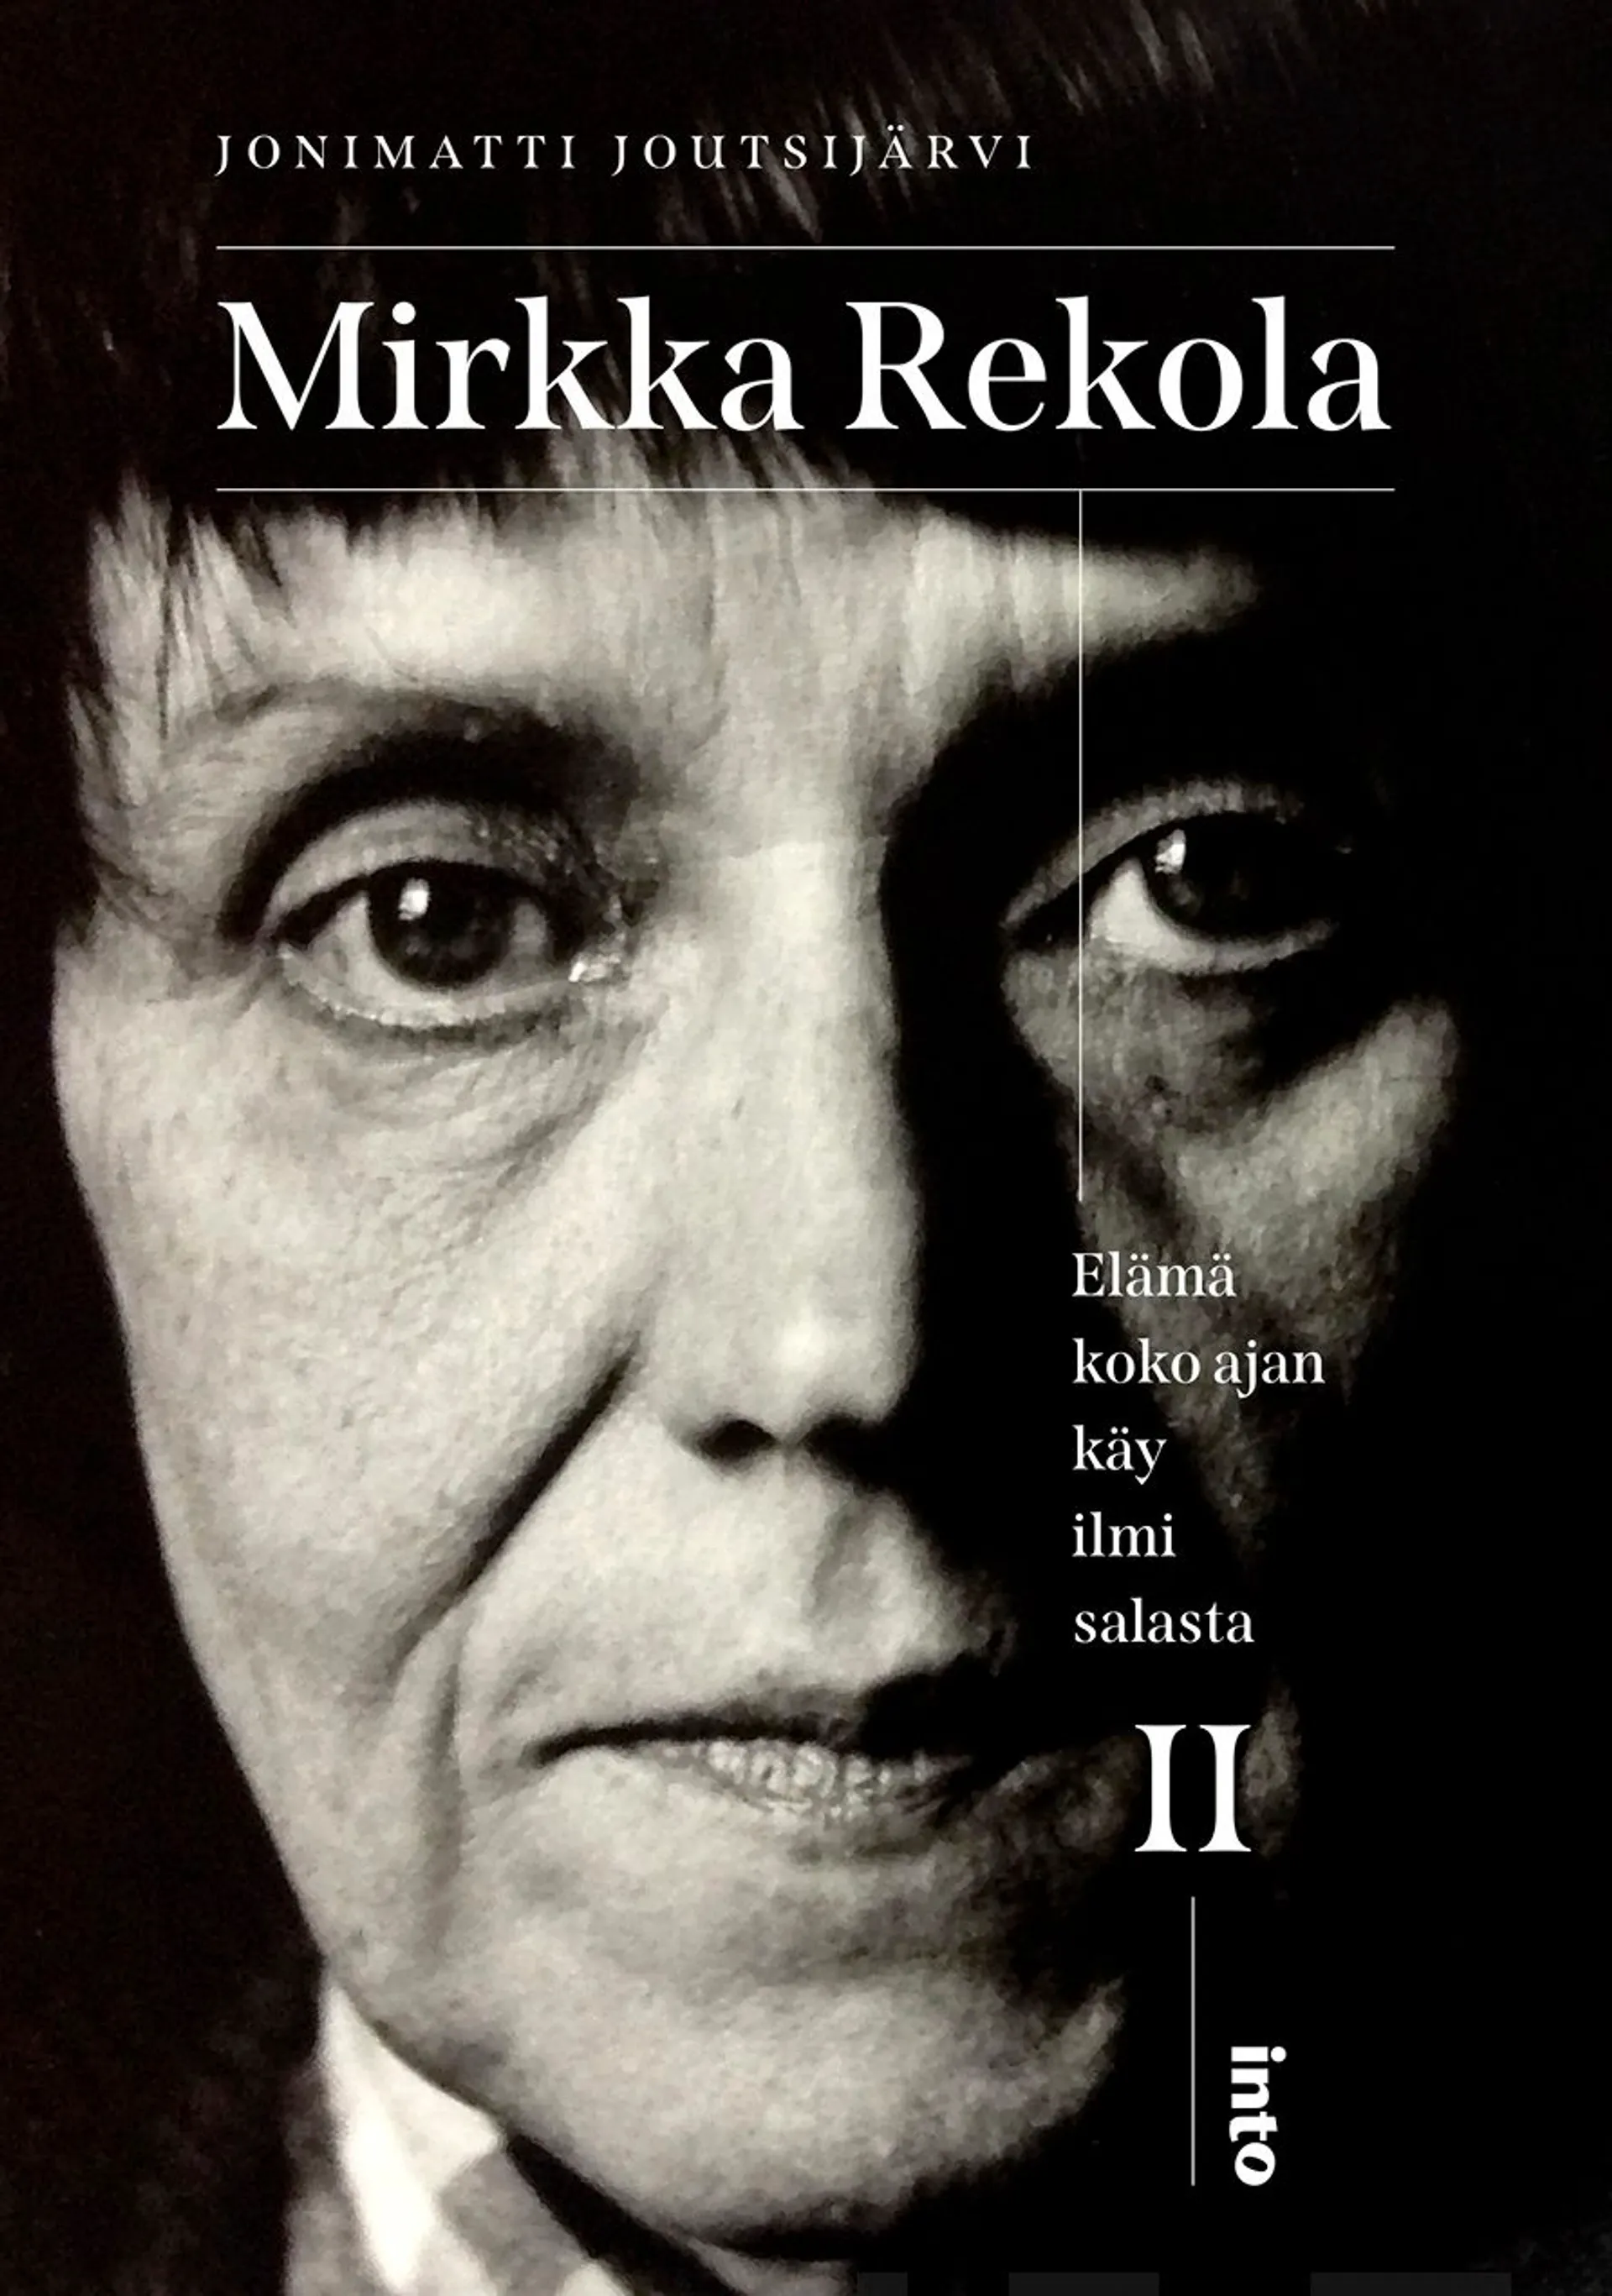 Joutsijärvi, Mirkka Rekola II - Elämä koko ajan käy ilmi salasta